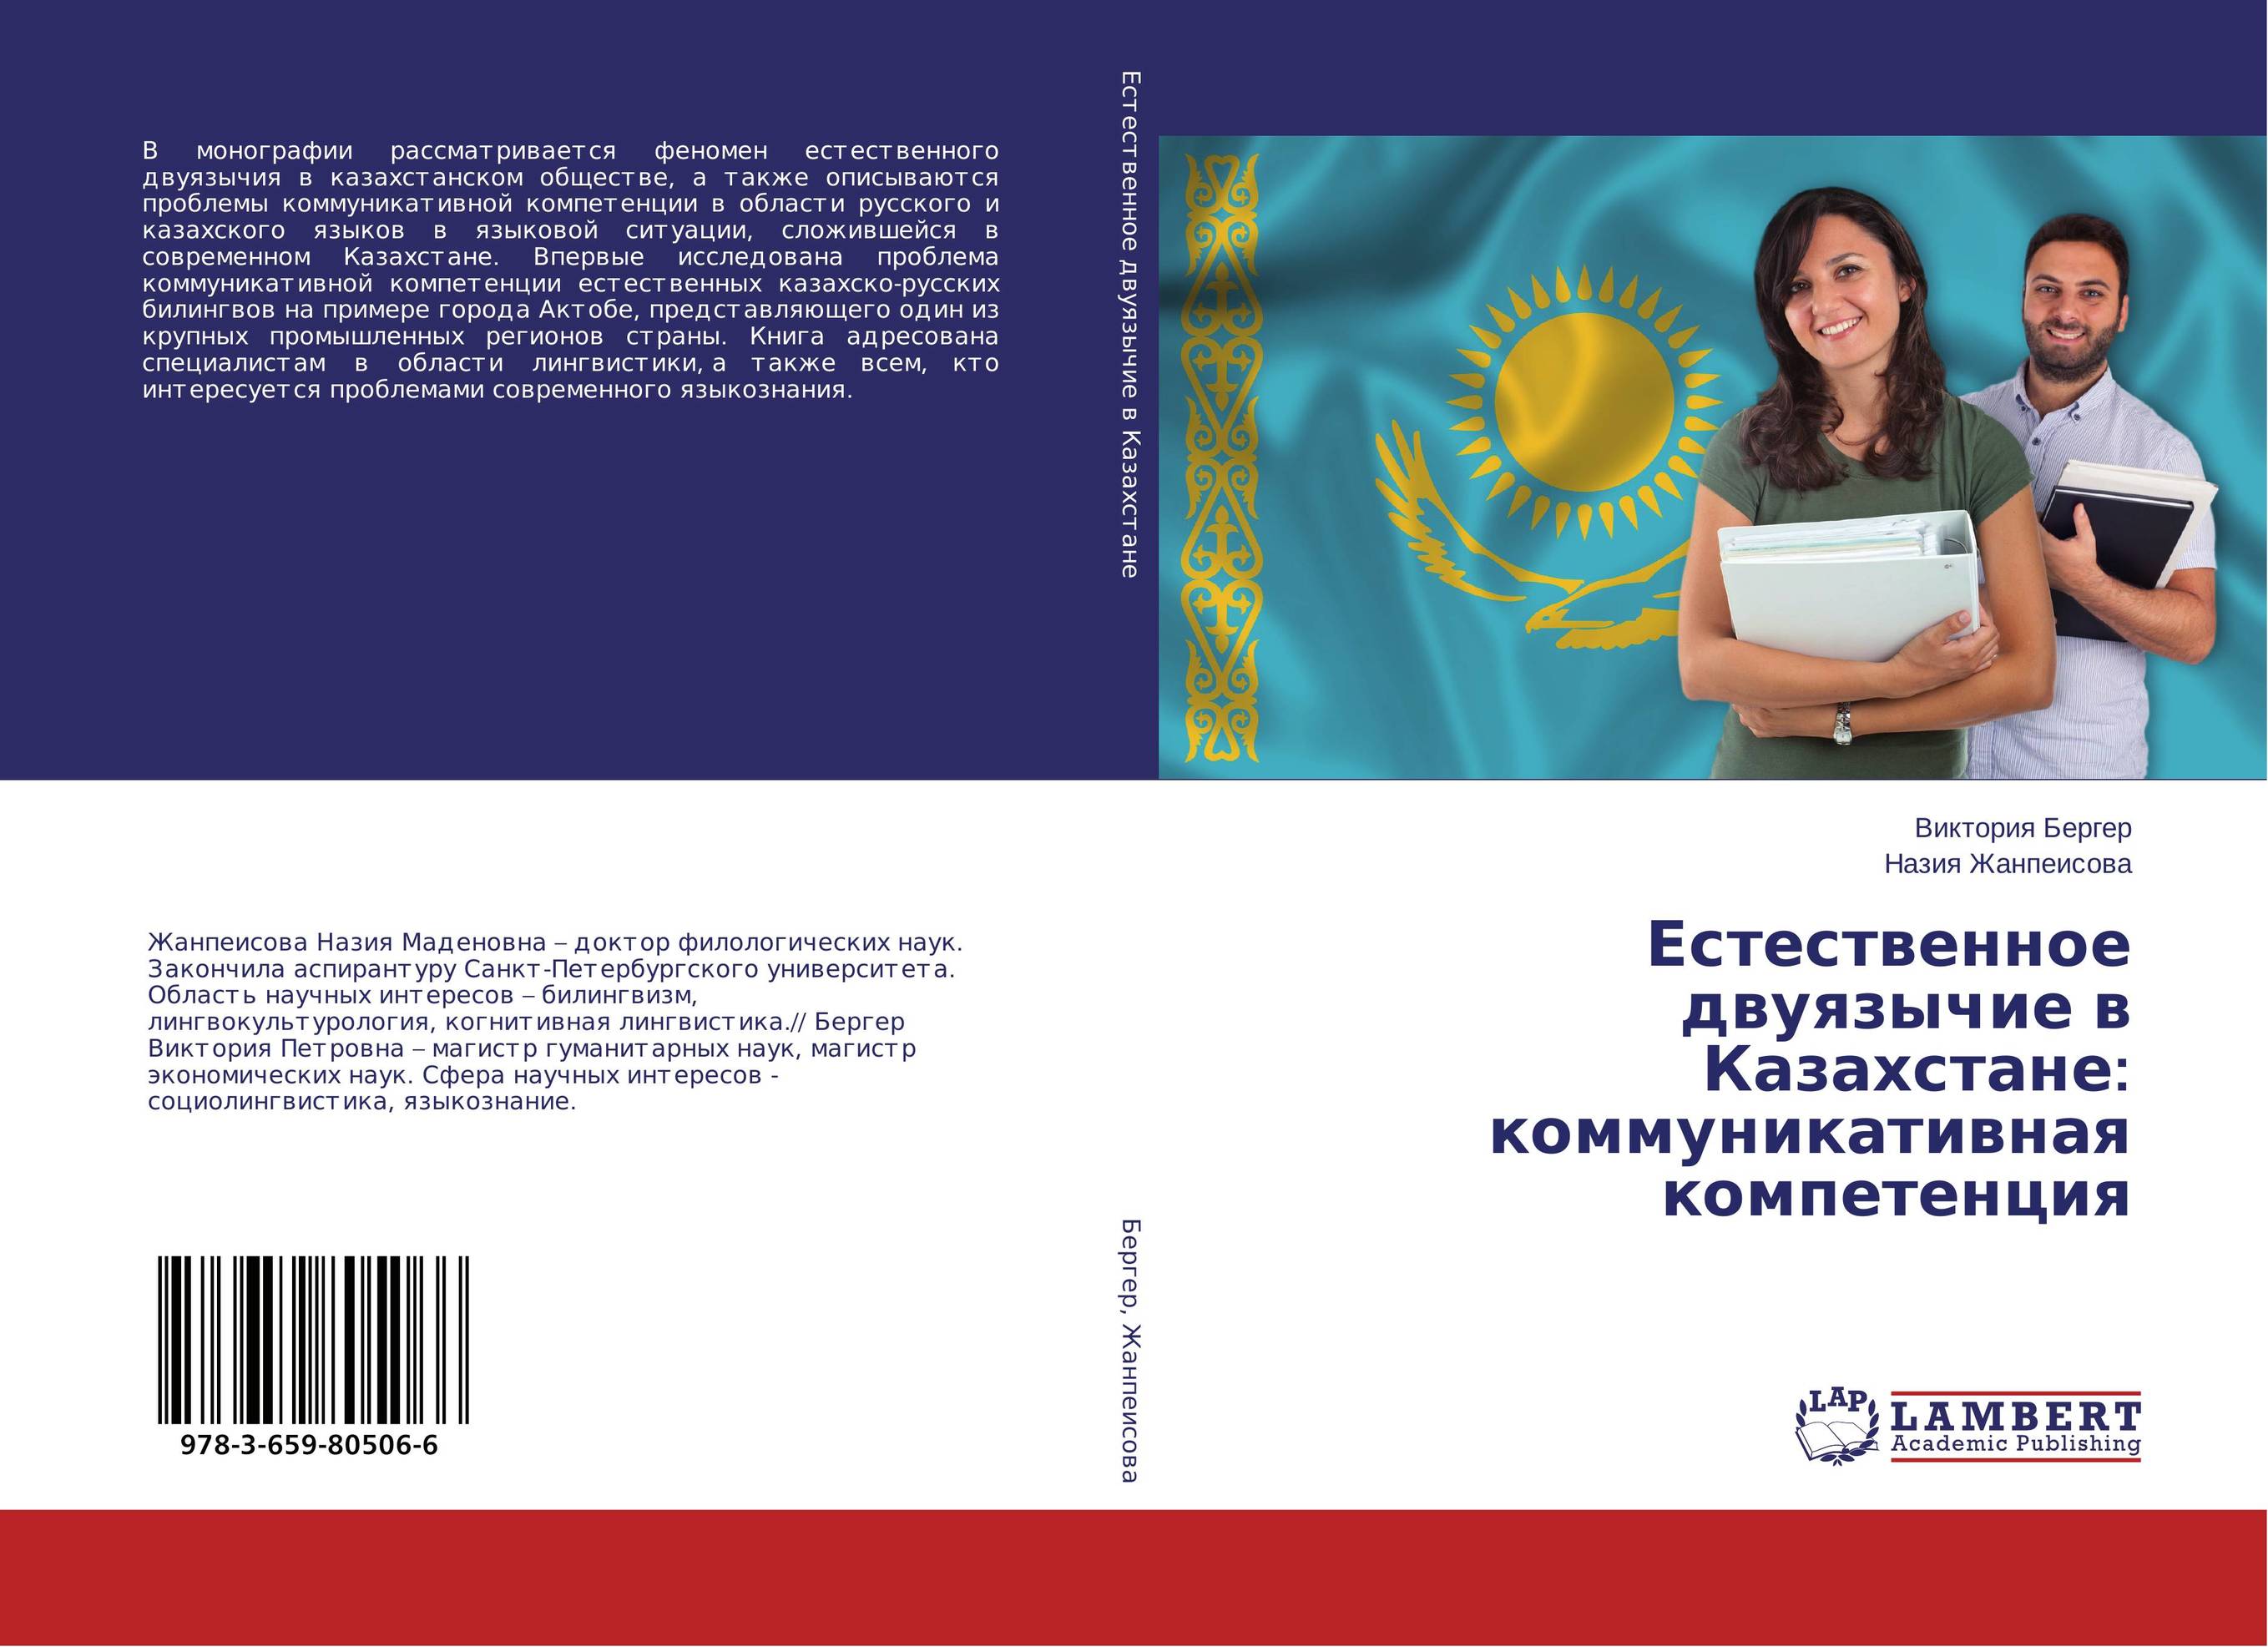 
        Естественное двуязычие в Казахстане: коммуникативная компетенция..
      